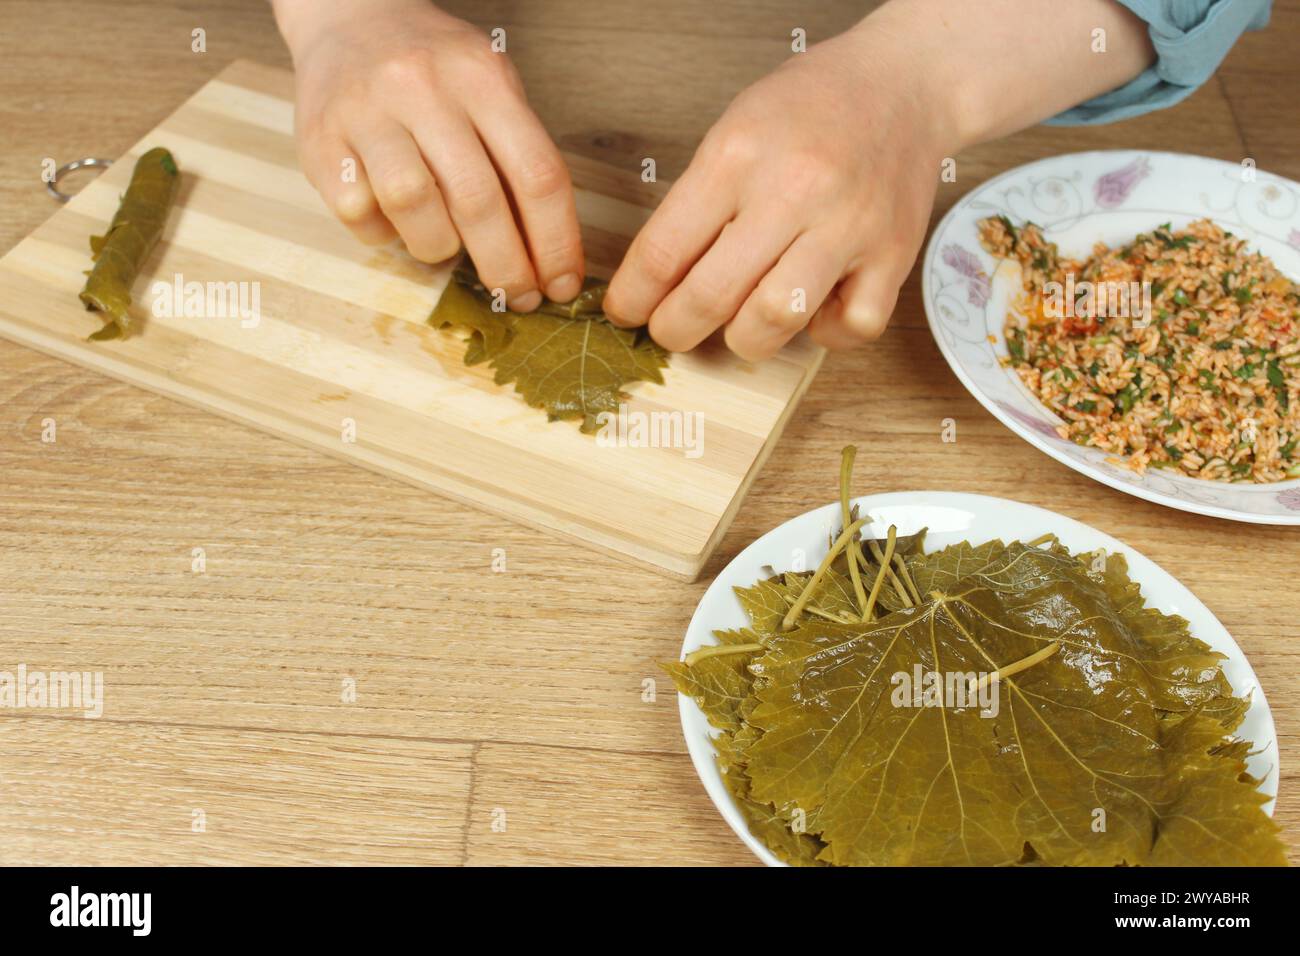 Mains de femme préparant l'emballage farci avec l'ingrédient de riz. Cuisine grecque ou turque Yaprak Sarma ou Dolma préparation. Nourriture traditionnelle égéenne en Turquie. Banque D'Images